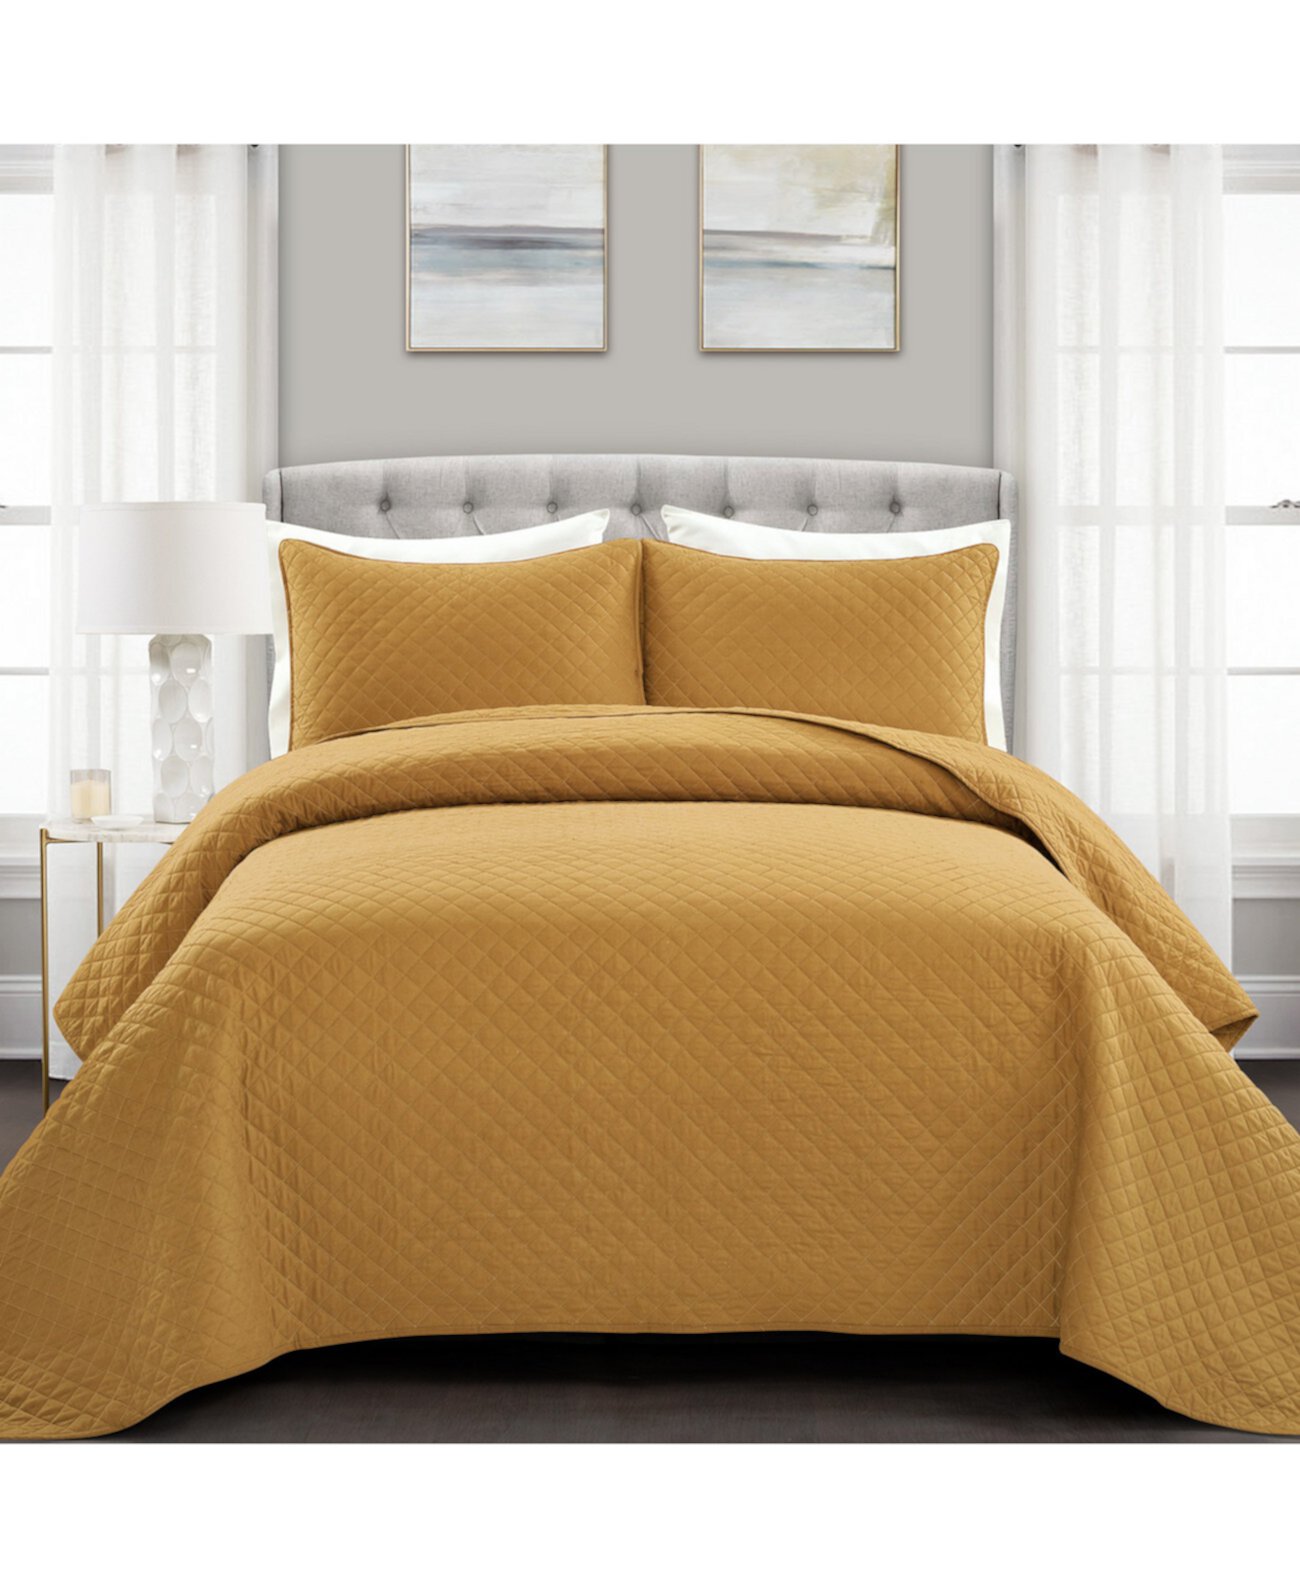 Комплект стеганого одеяла Ava Cotton из 3 предметов, King Lush Décor